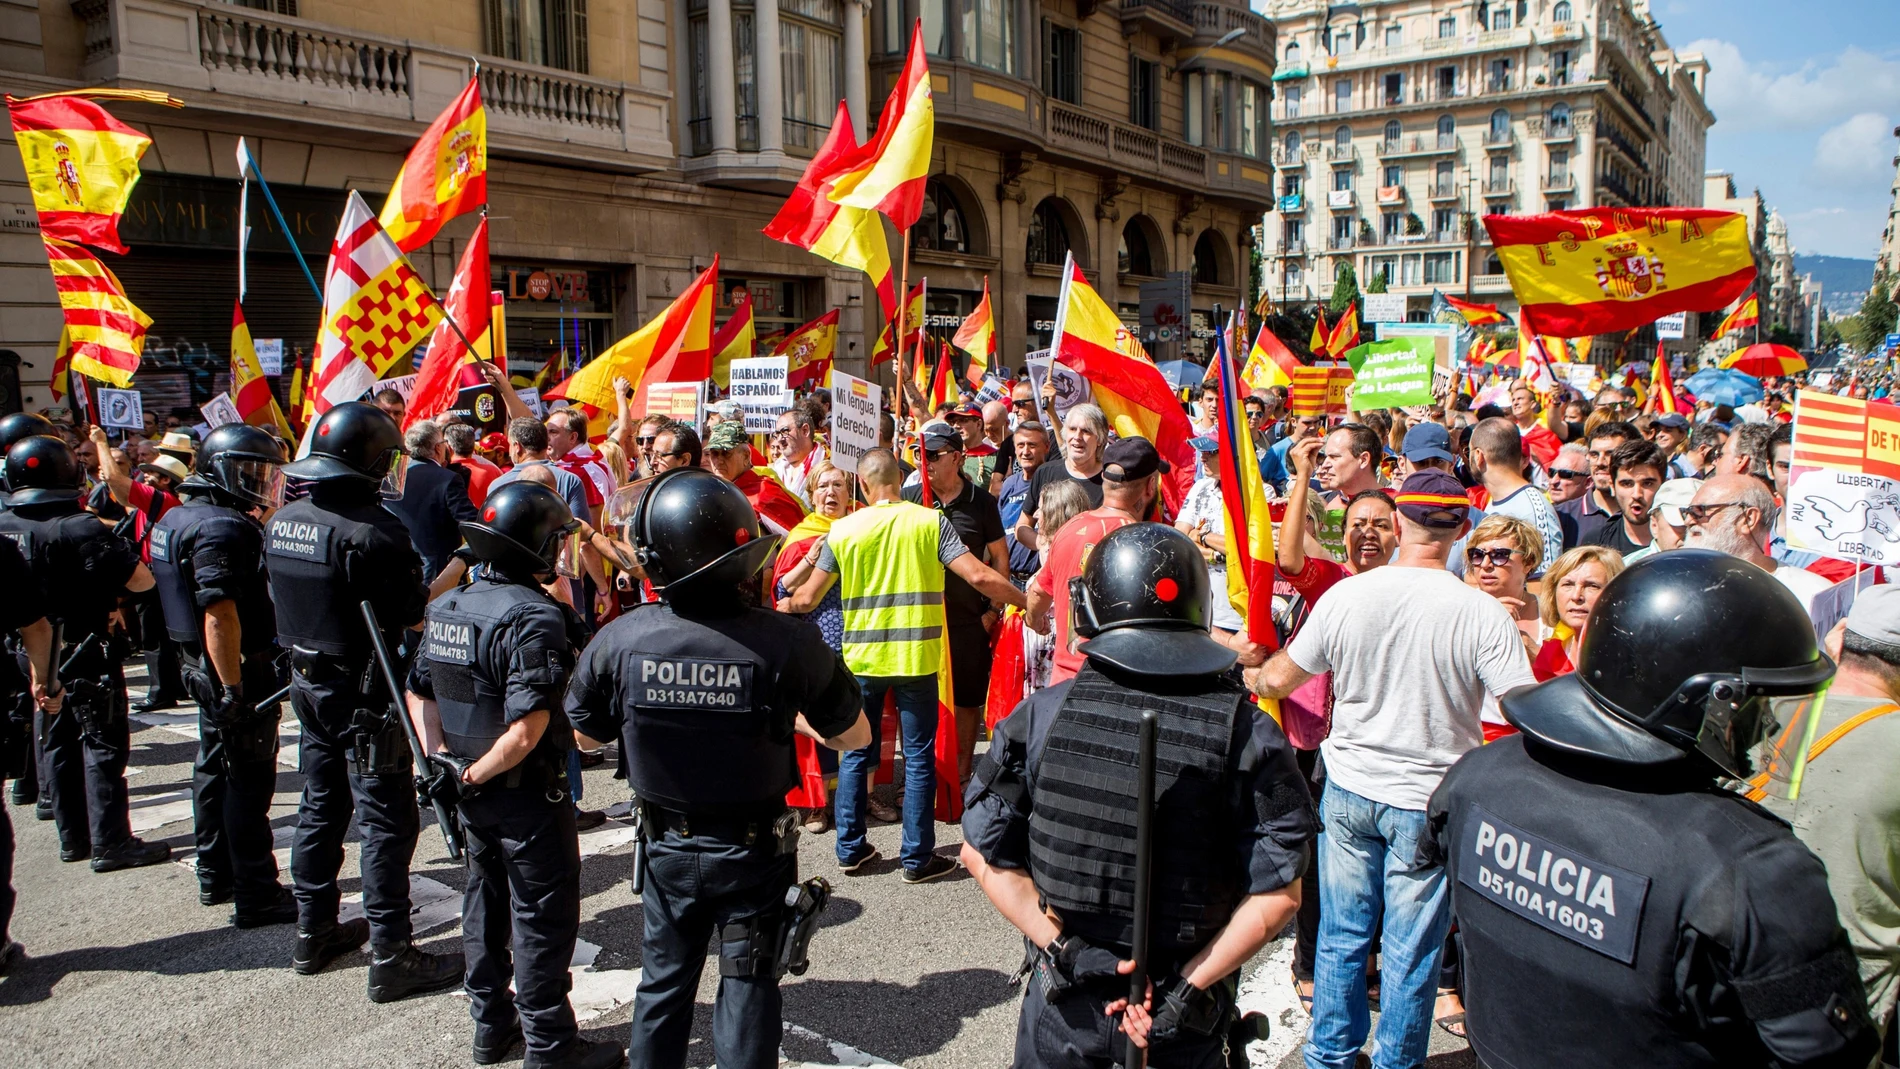 Mossos d'Esquadra impiden el paso a un grupo de personas hacia la plaza de Sant Jaume para asistir a la concentración convocada por la asociación Hablamos Español bajo el lema "Contra la imposición lingüística y el adoctrinamiento: Libertad" .